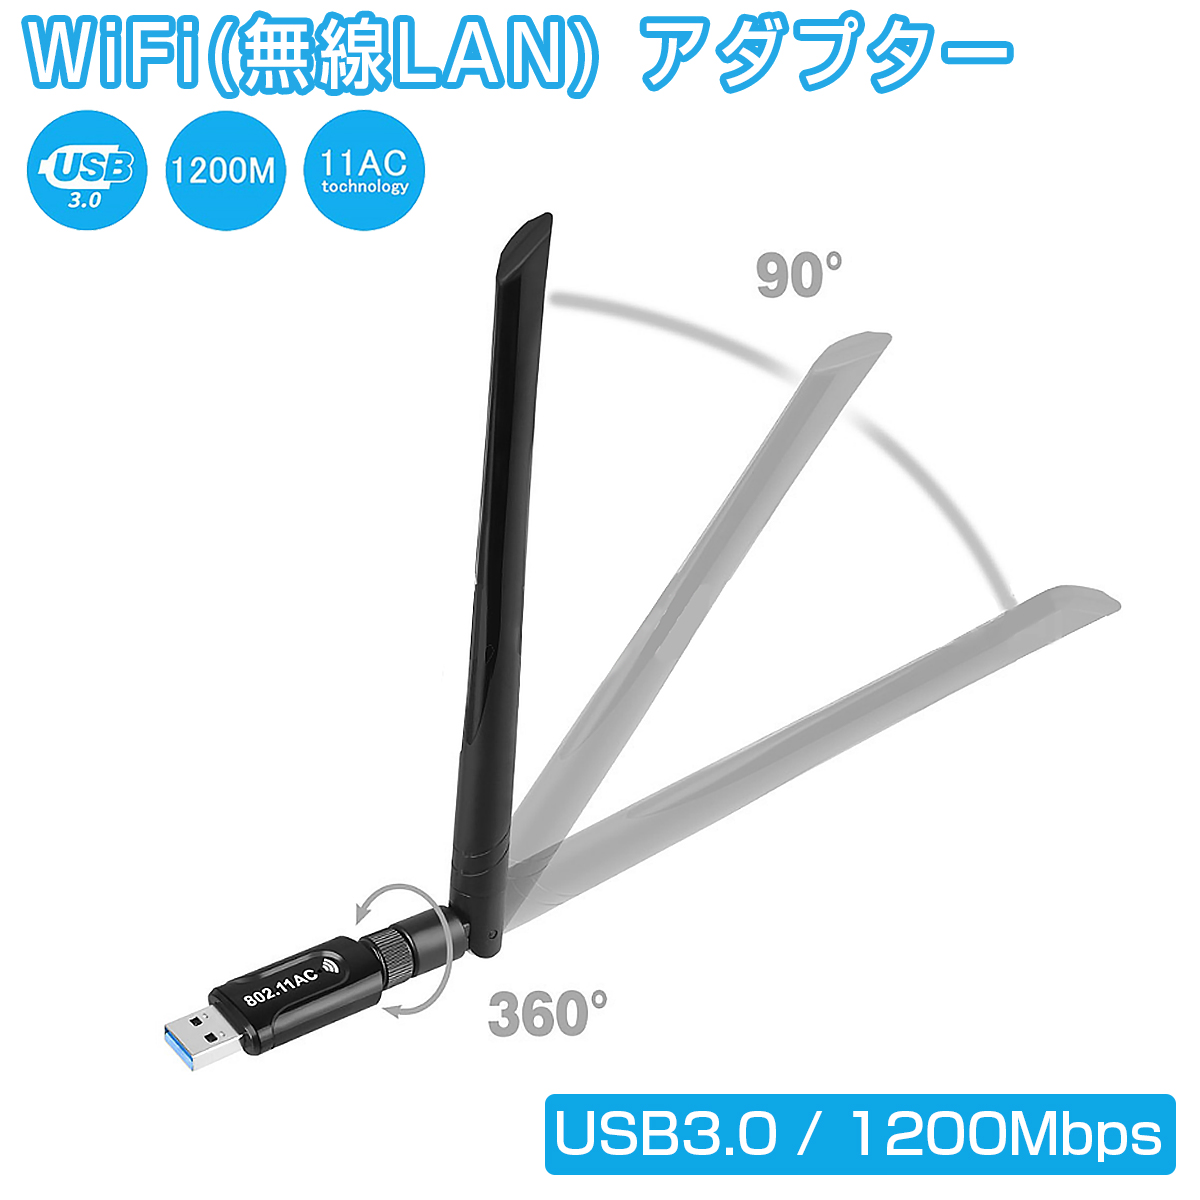 卸売B2B WiFi 無線LAN 子機 親機 アダプター 1200Mbps USB3.0 超高速 デュアルバンド 2.4GHz 300Mbps/5GHz 867Mbps 11ac/n/a/g/b 5dBi ハイパワーアンテナ Windows 1ヶ月保証